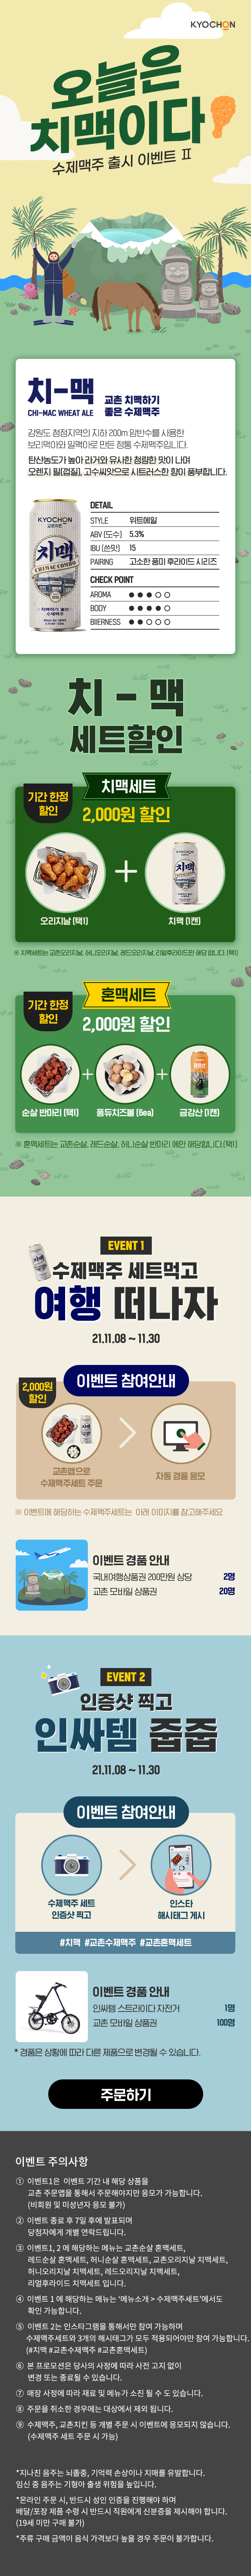 캠핑가자 이벤트

https://m.kyochon.com/event/event_view?event_seq=295&event_kind=1